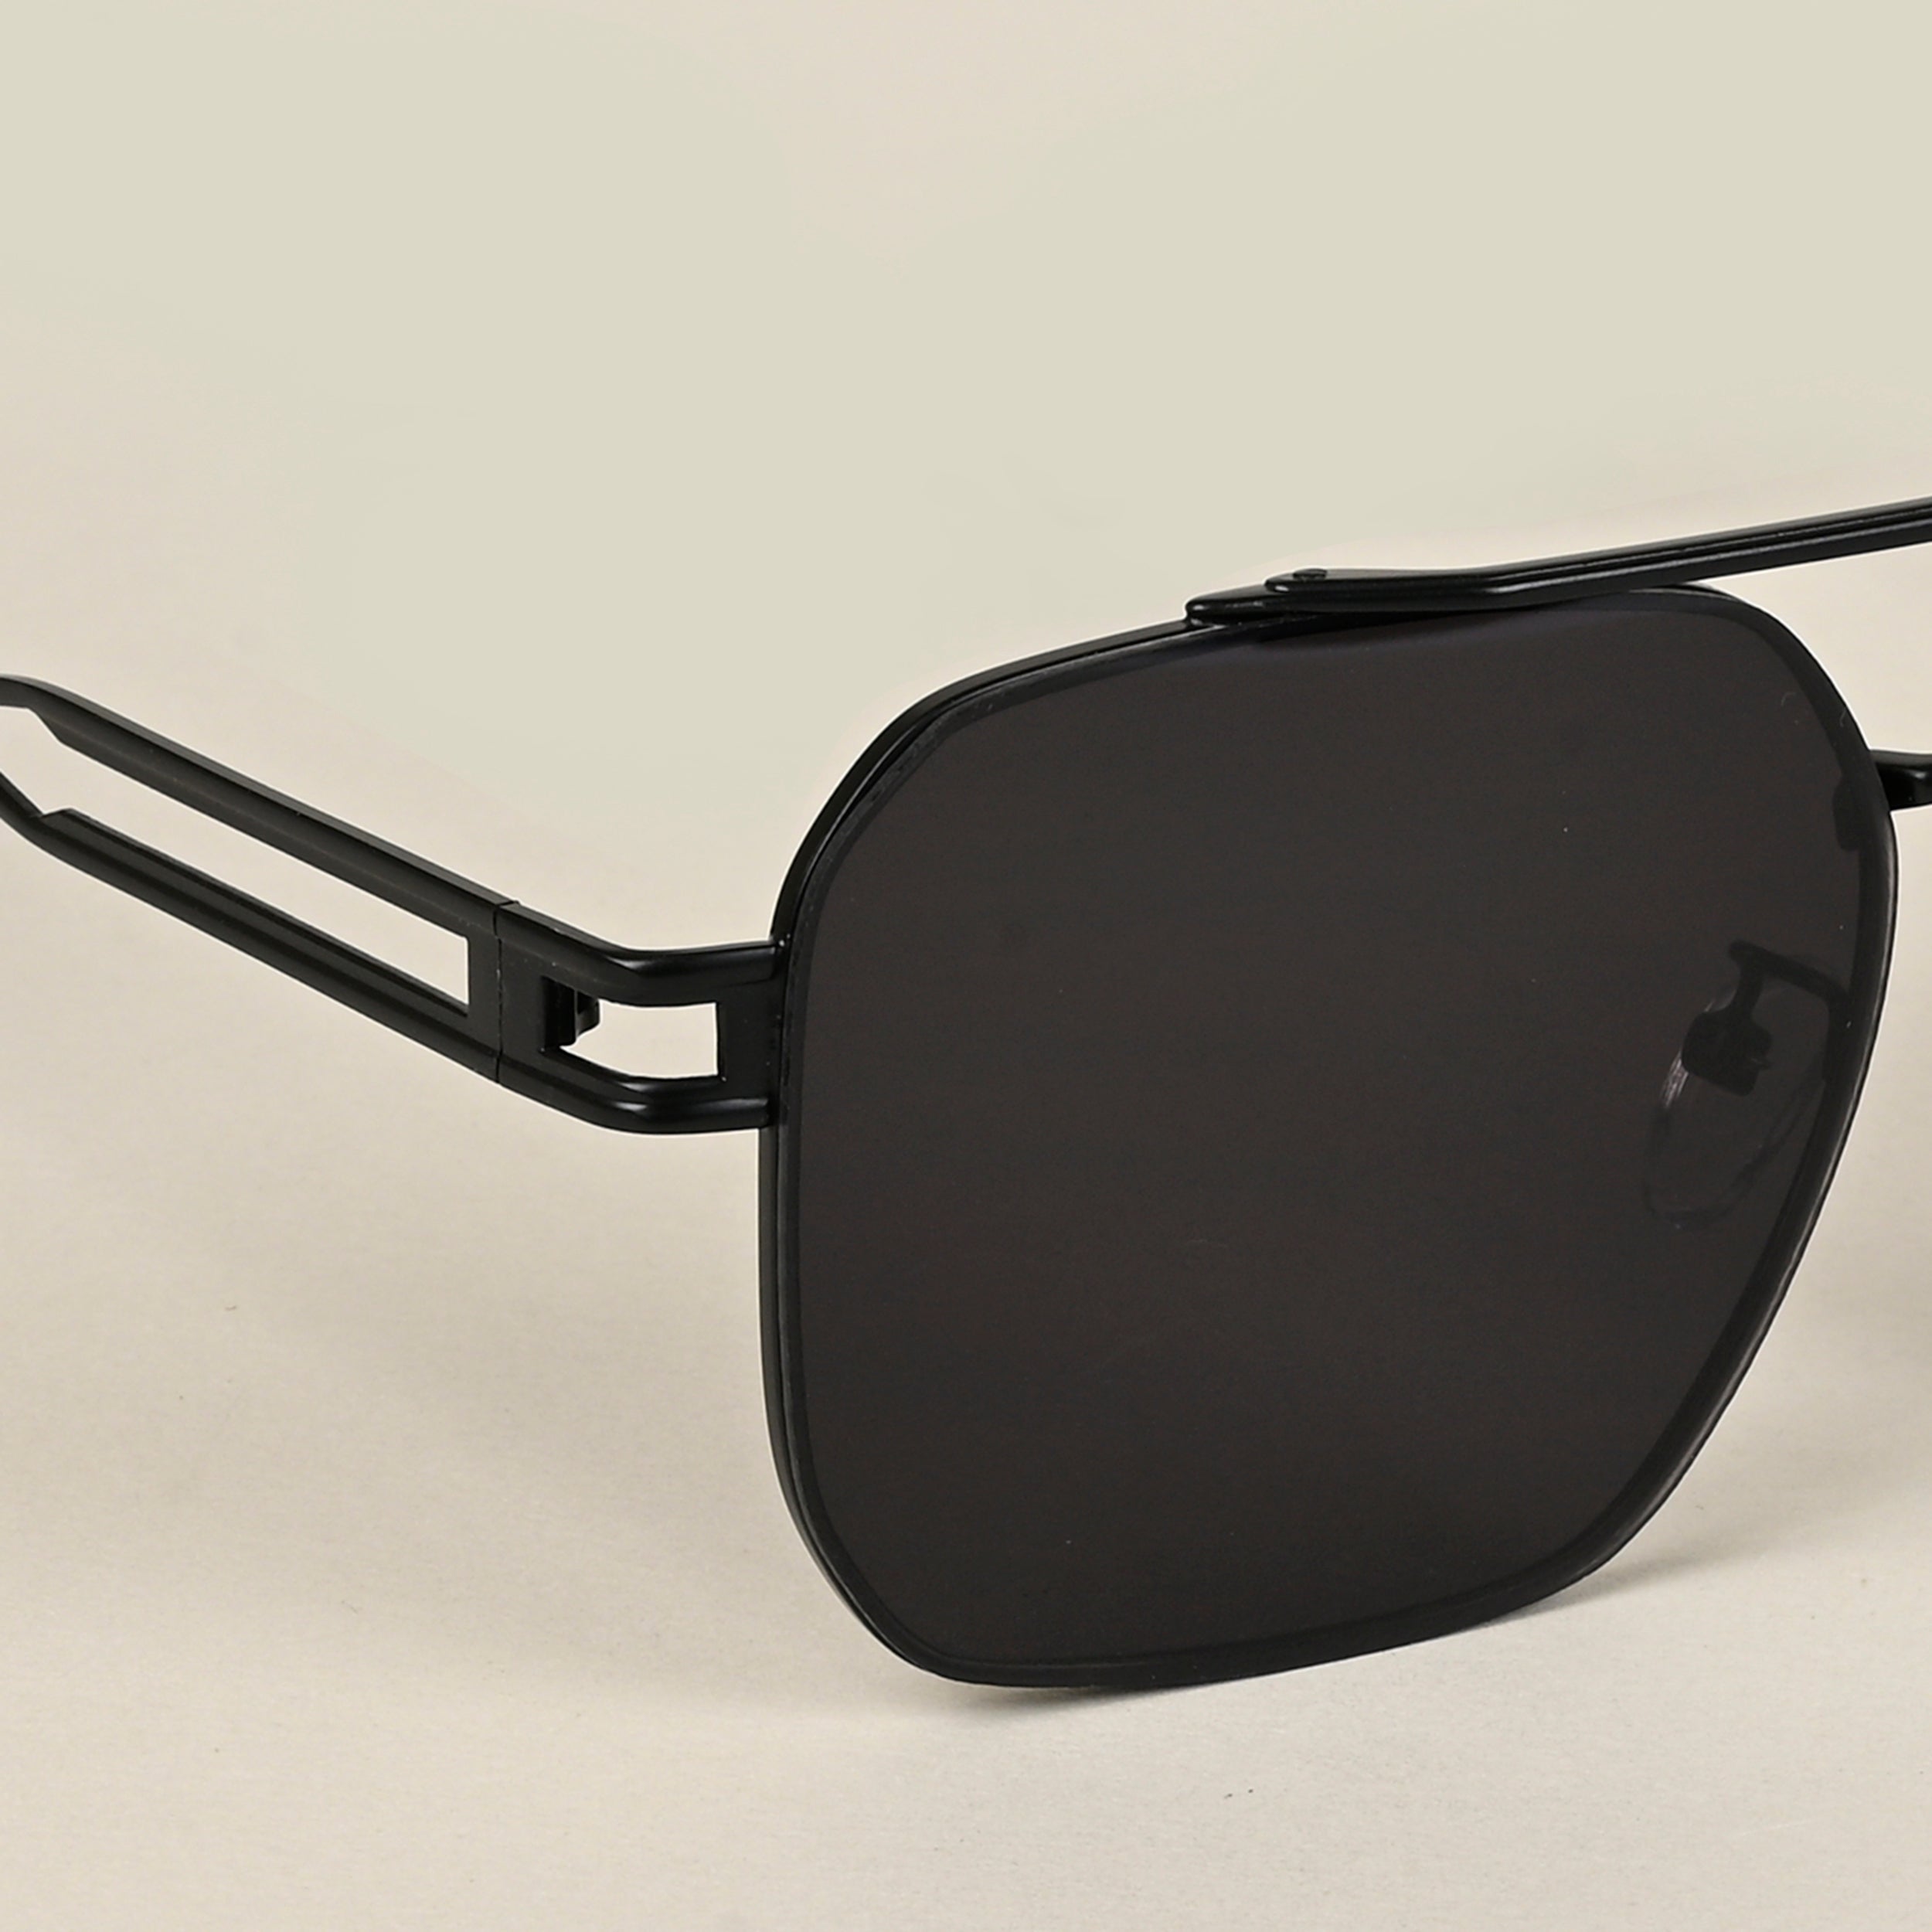 Voyage Aviator Sunglasses for Men & Women (Black Lens | Black Frame - MG5198)